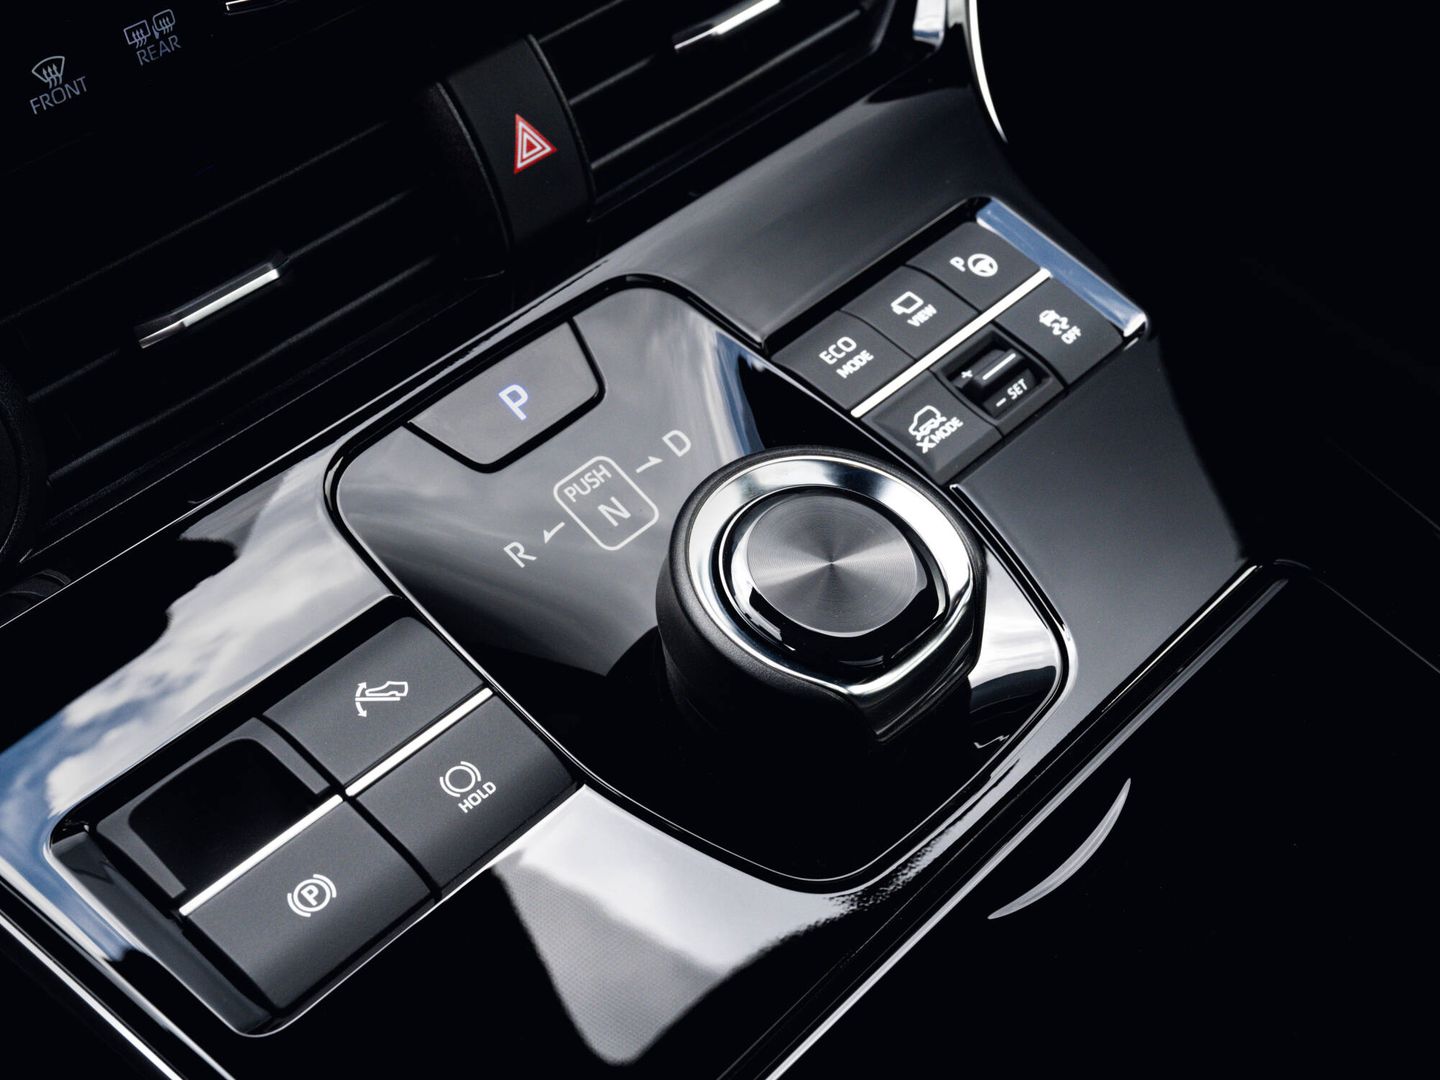 Mandos sencillos y a mano, y botones para elegir modo de conducción o intensidad de retención.